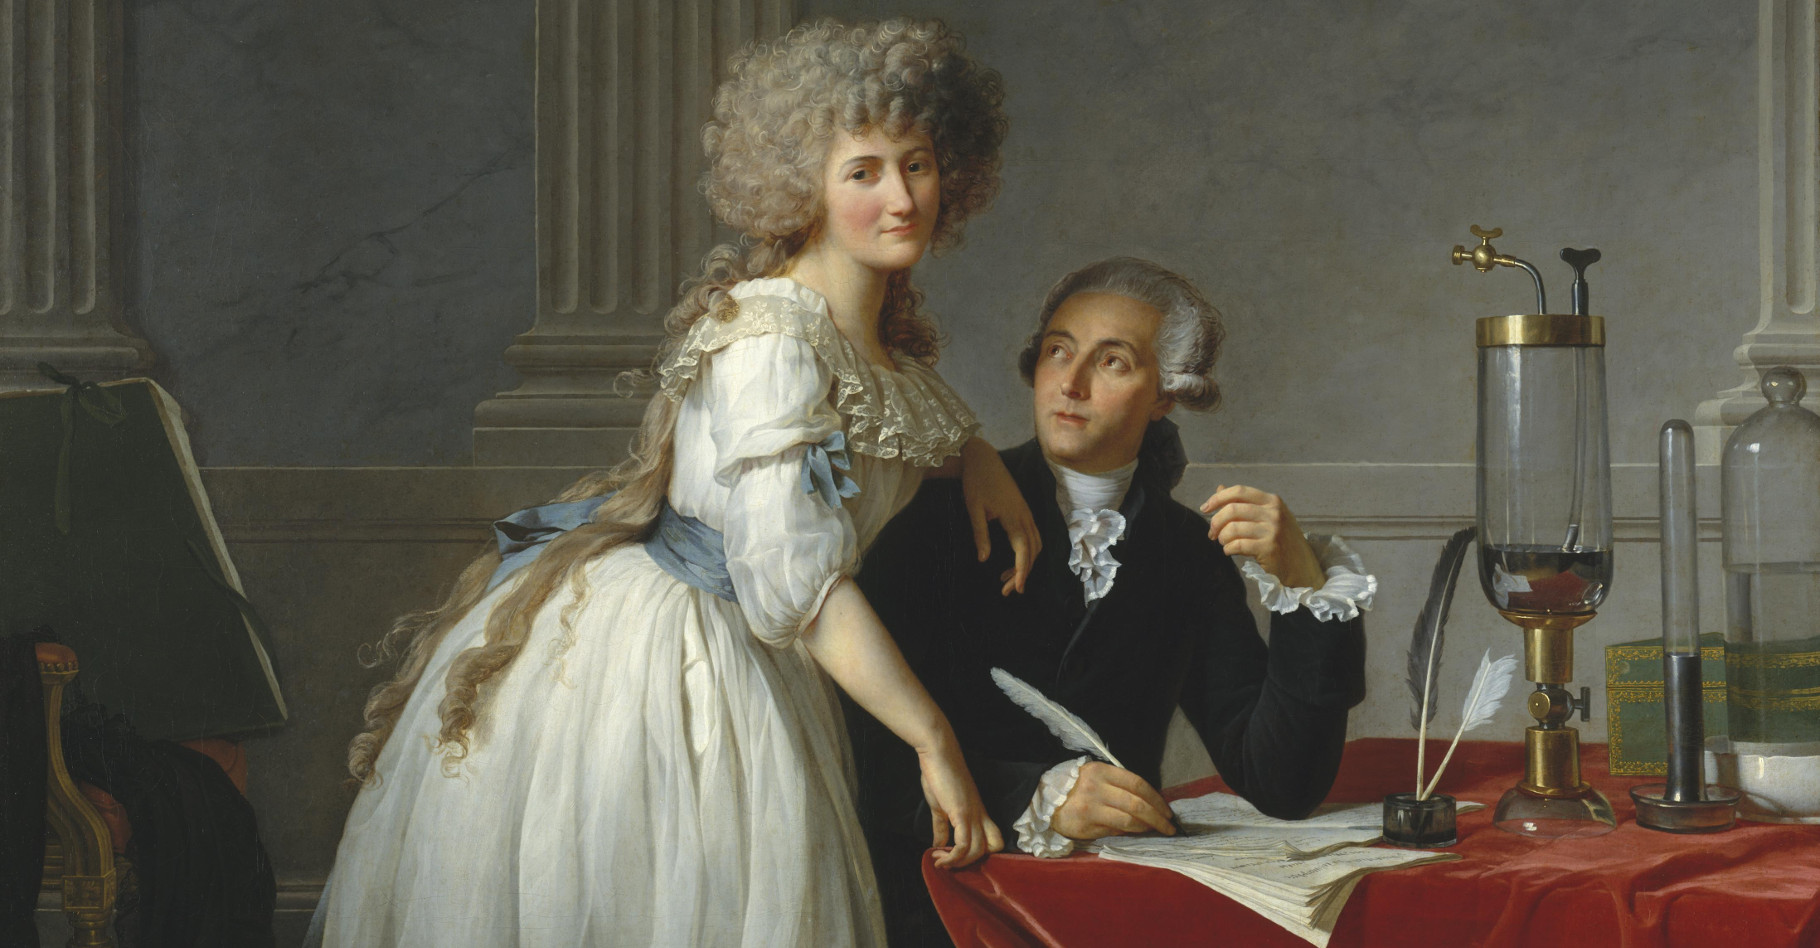 Antoine Lavoisier est considéré comme le père de la chimie moderne. Il est représenté&nbsp;accompagné de sa femme, Marie-Anne Lavoisier, sur ce portrait réalisé par Jacques-Louis David&nbsp;en 1788.&nbsp;© Wikimedia Commons,&nbsp;DP